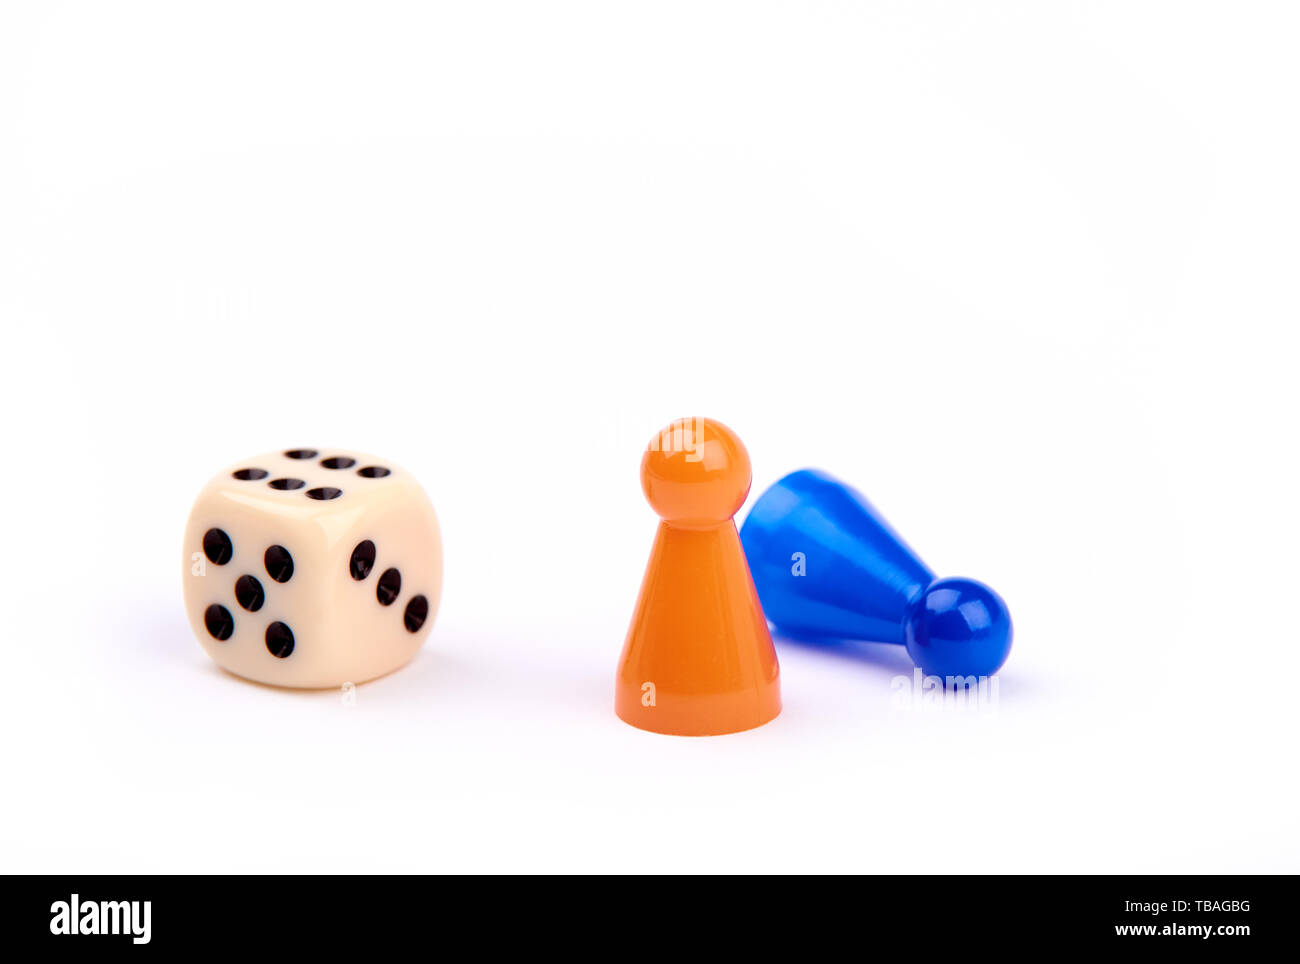 Jouer aux dés avec points noirs et numéro six, deux pièces de jeu, comme permanent orange et bleu allongé comme gagnant perdant - isolé sur fond blanc Banque D'Images